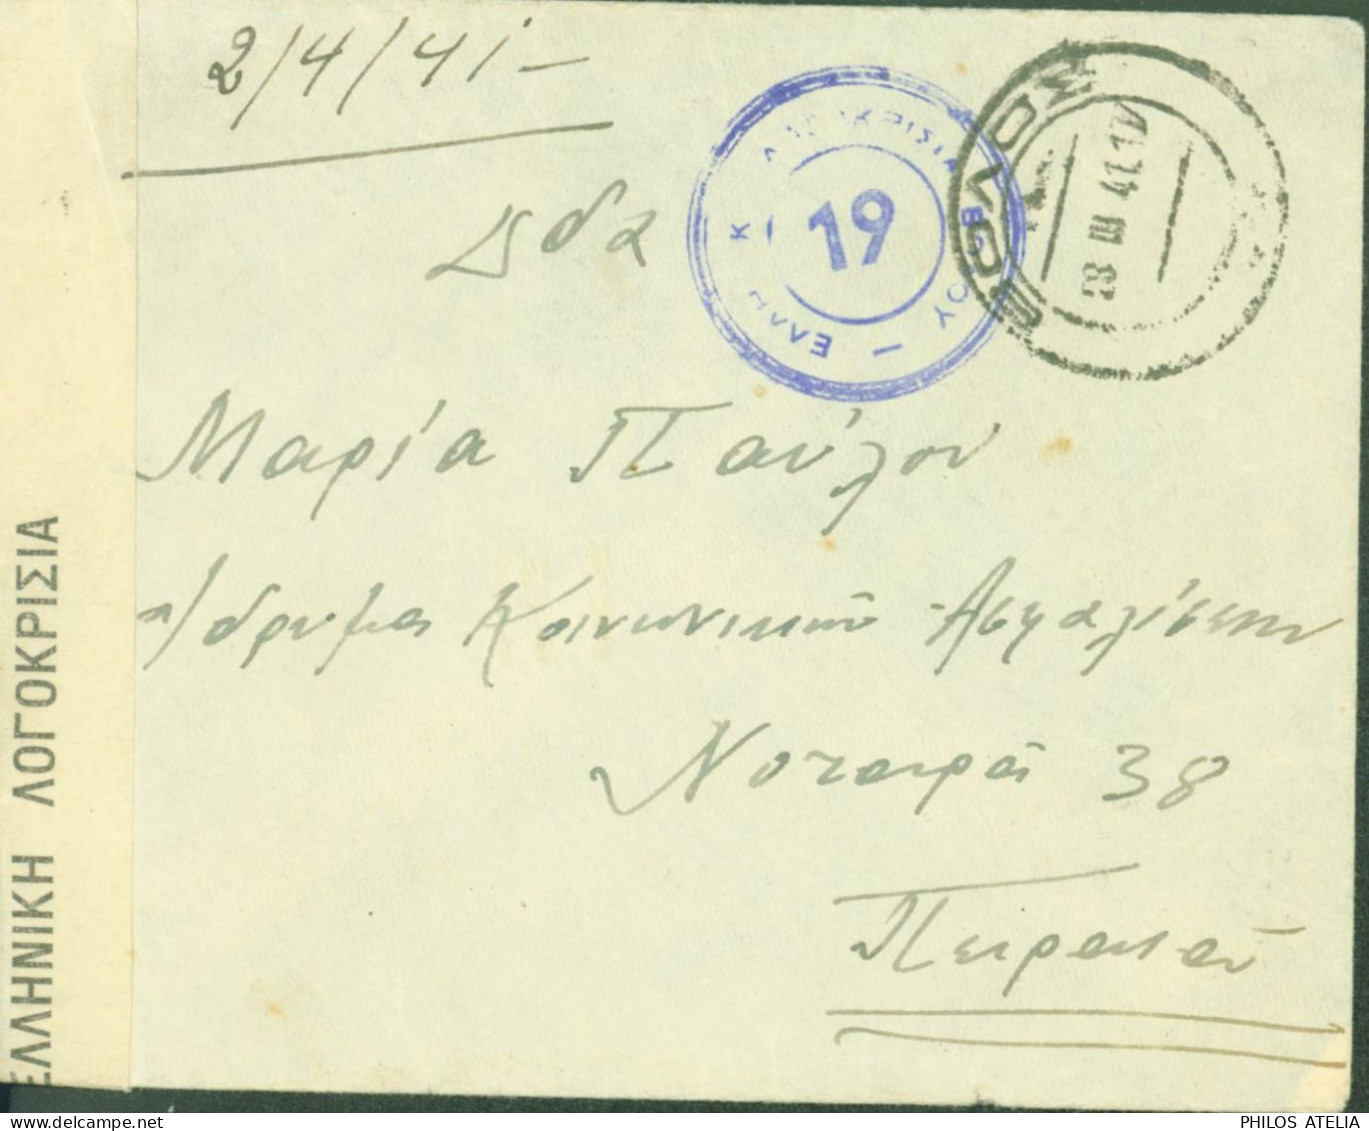 Grèce Guerre 40 Envoyée Au Service & Assistance Au Pirée Censure CAD Volos 19 III 1941 - Covers & Documents